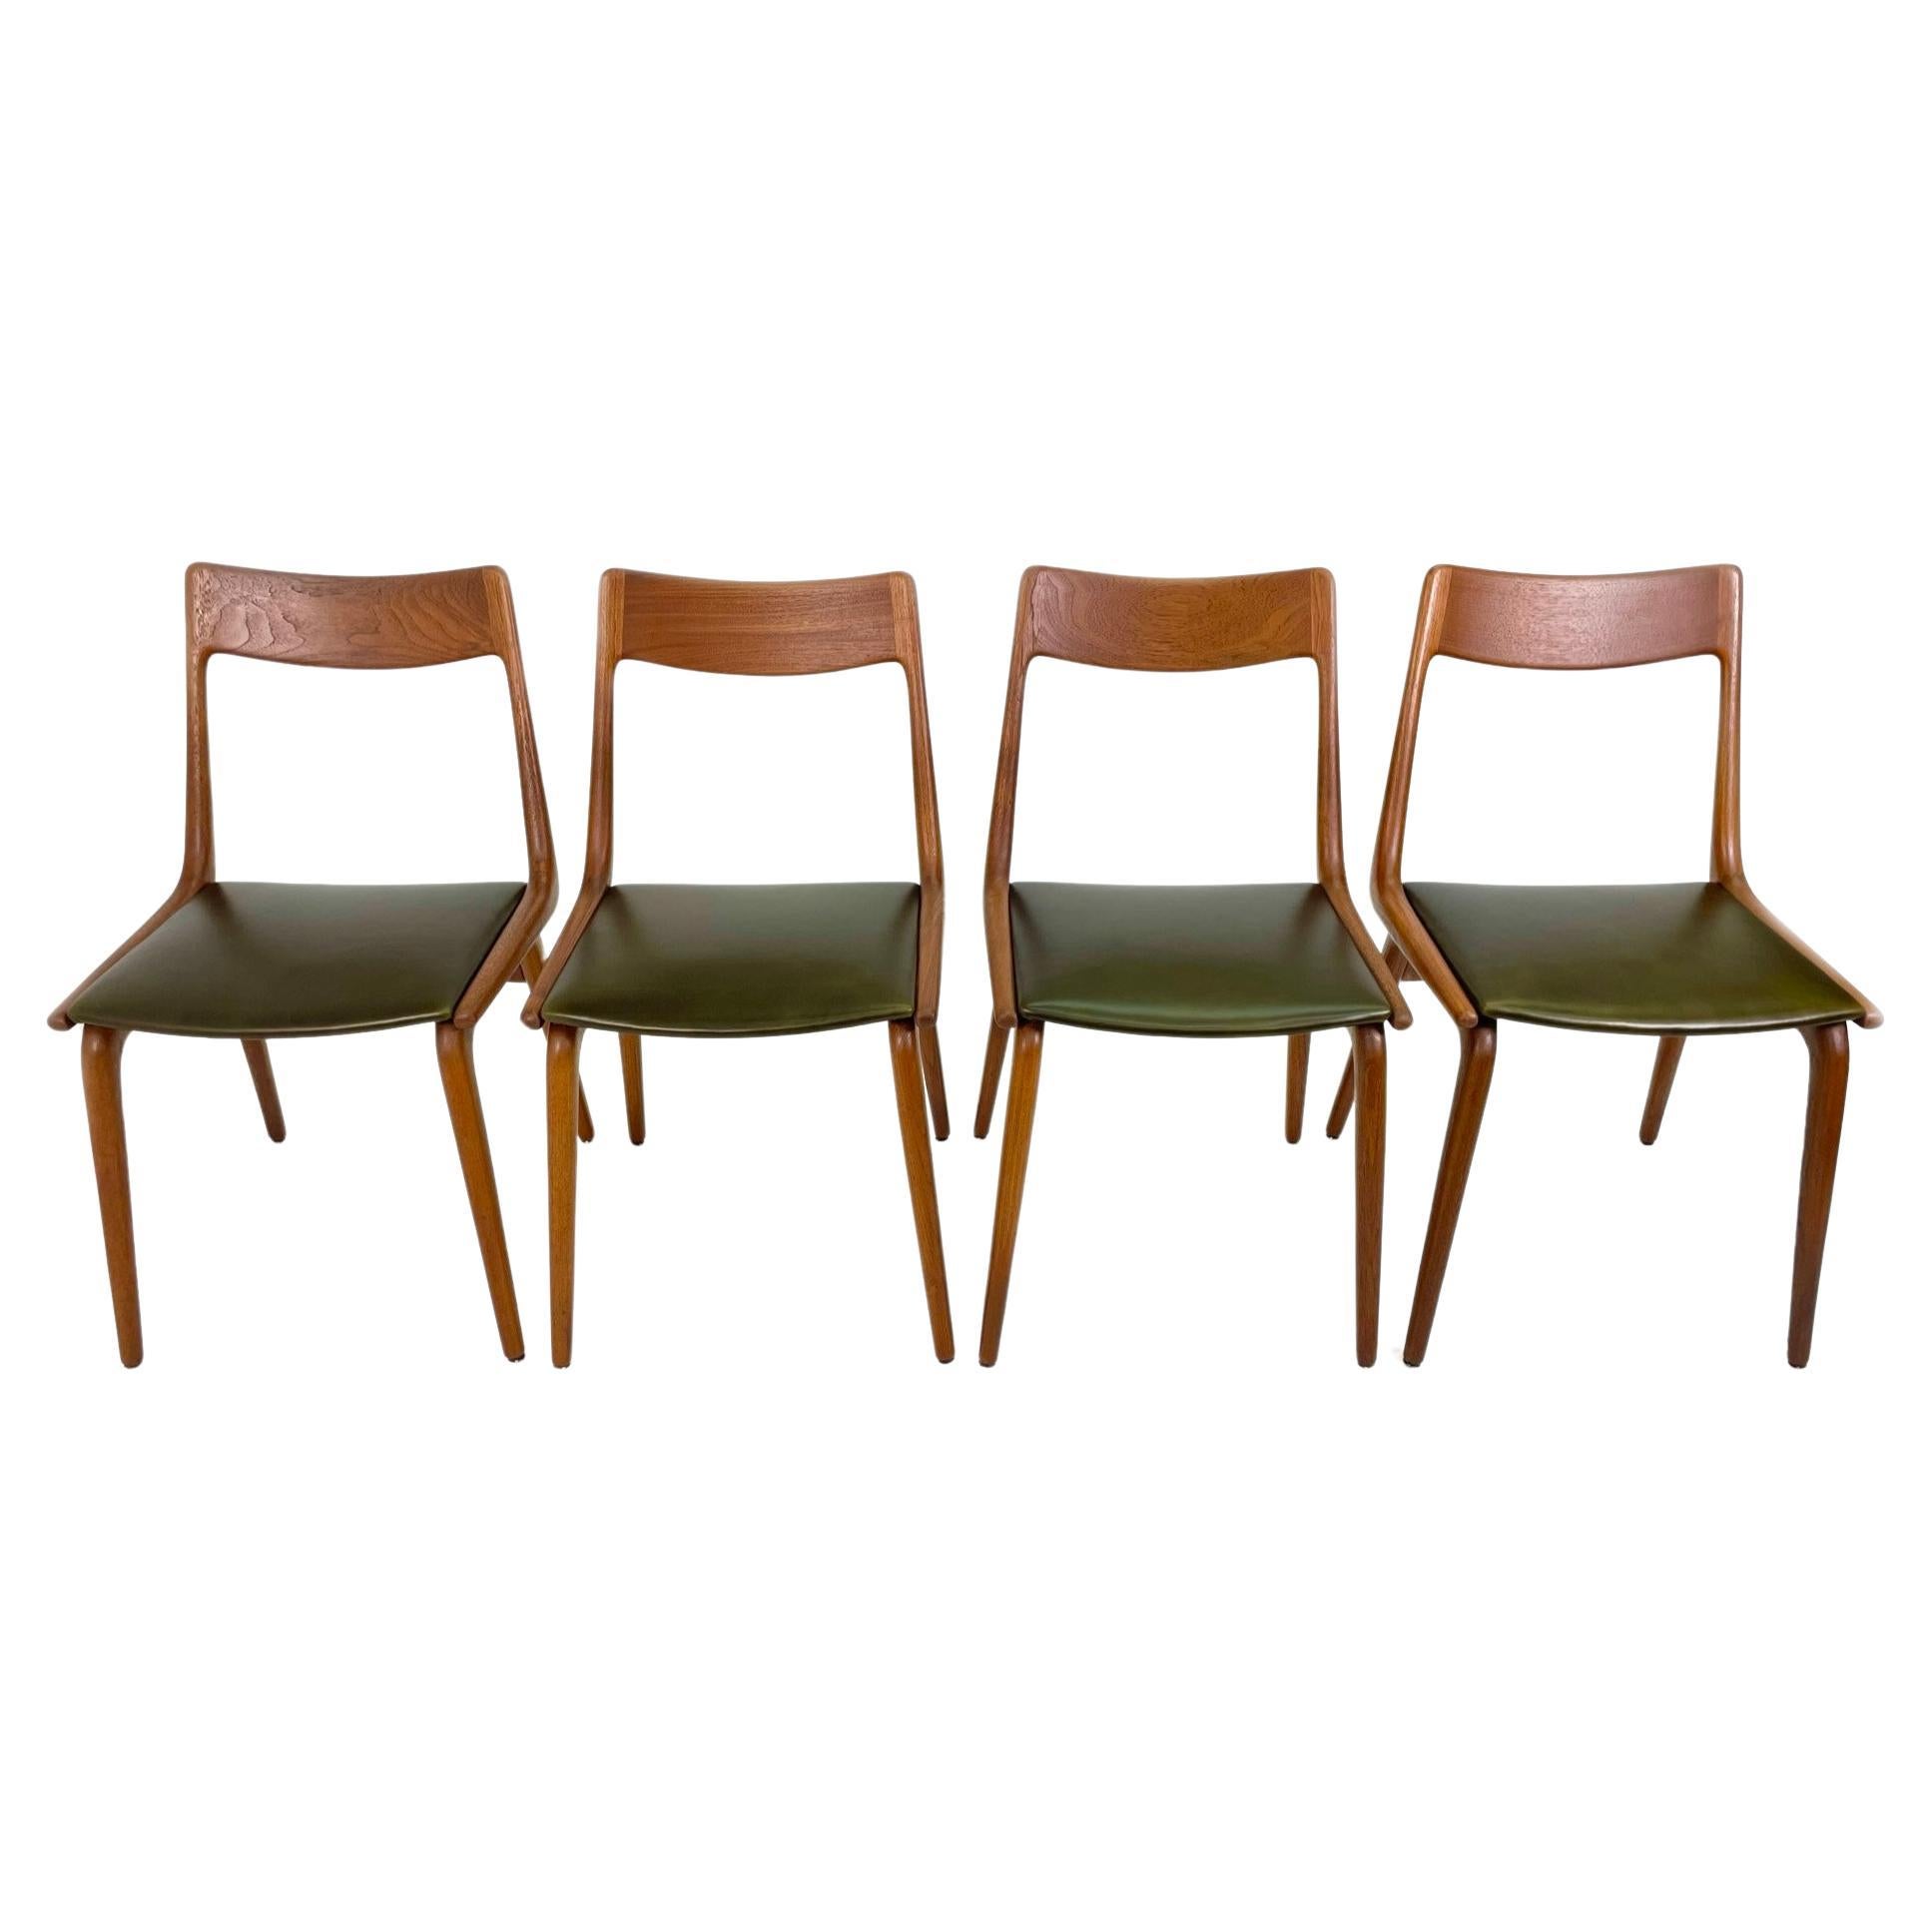 Set of 4 Boomerang Dining Chairs by Alfred Christensen for Slagelse Møbelværk in